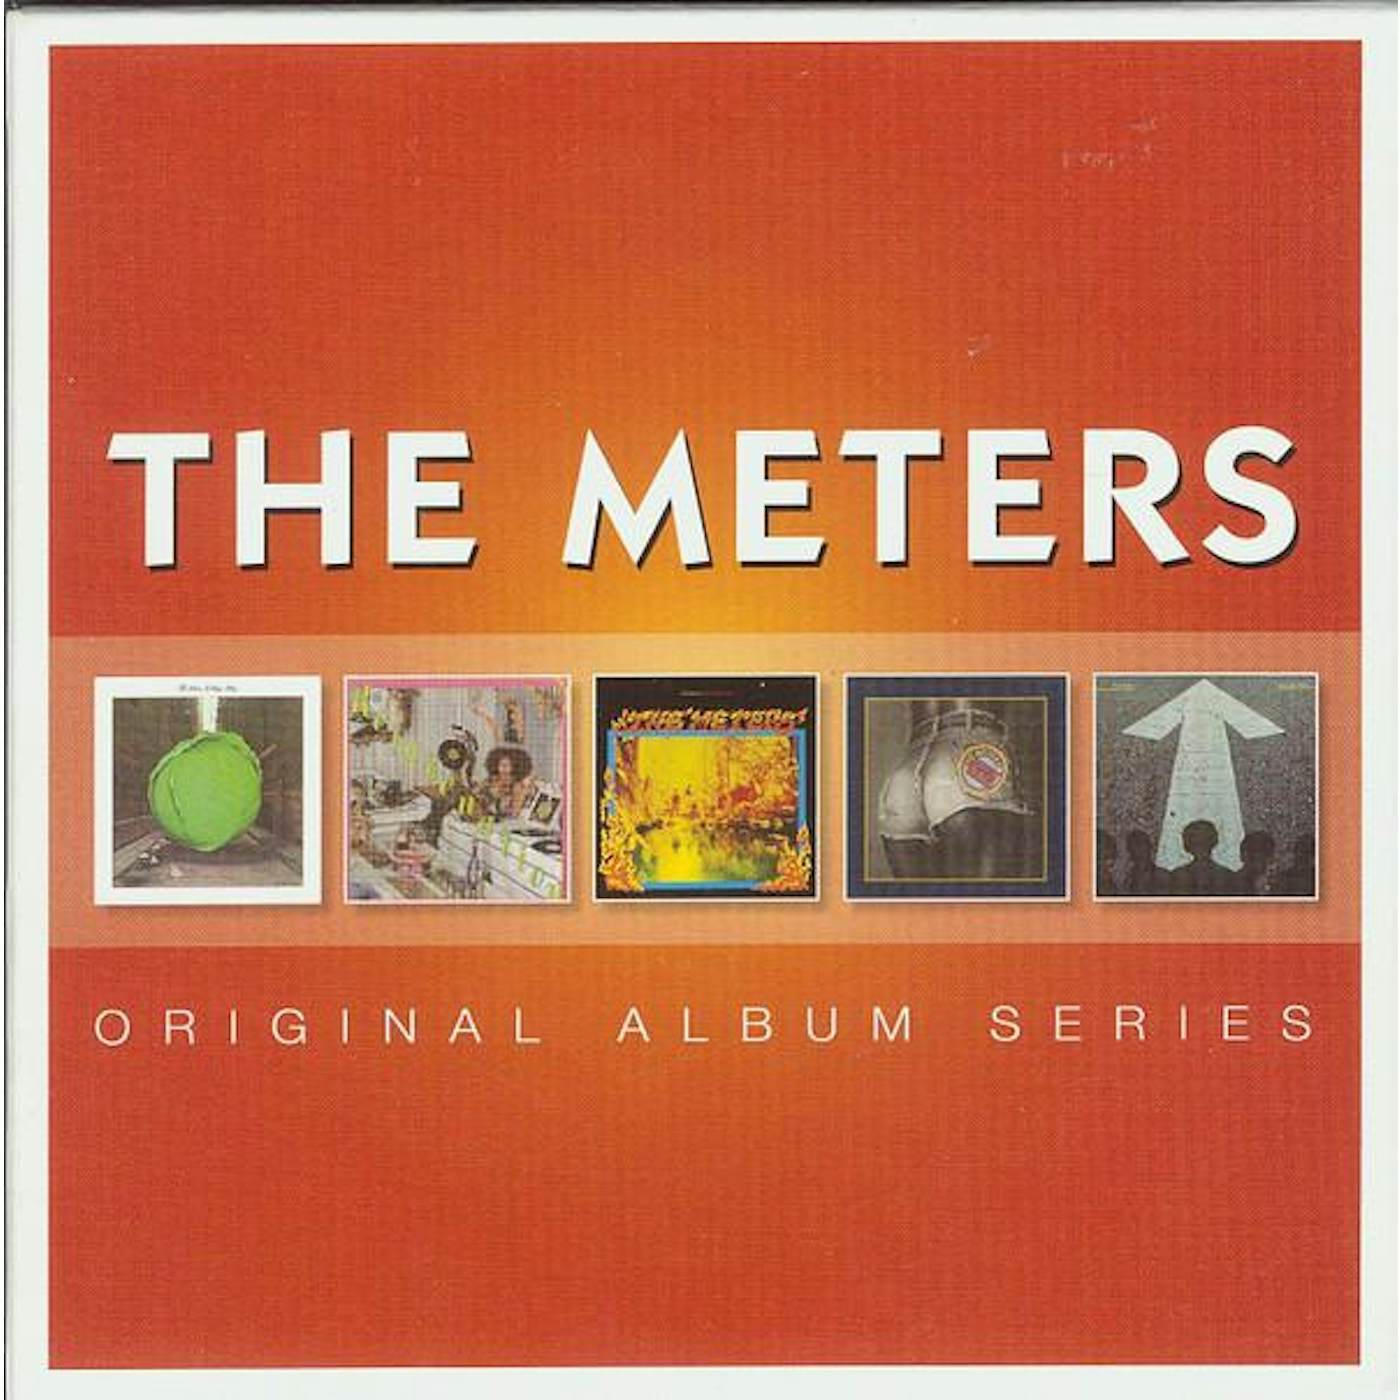 The Meters ORIGINAL ALBUM SERIES CD